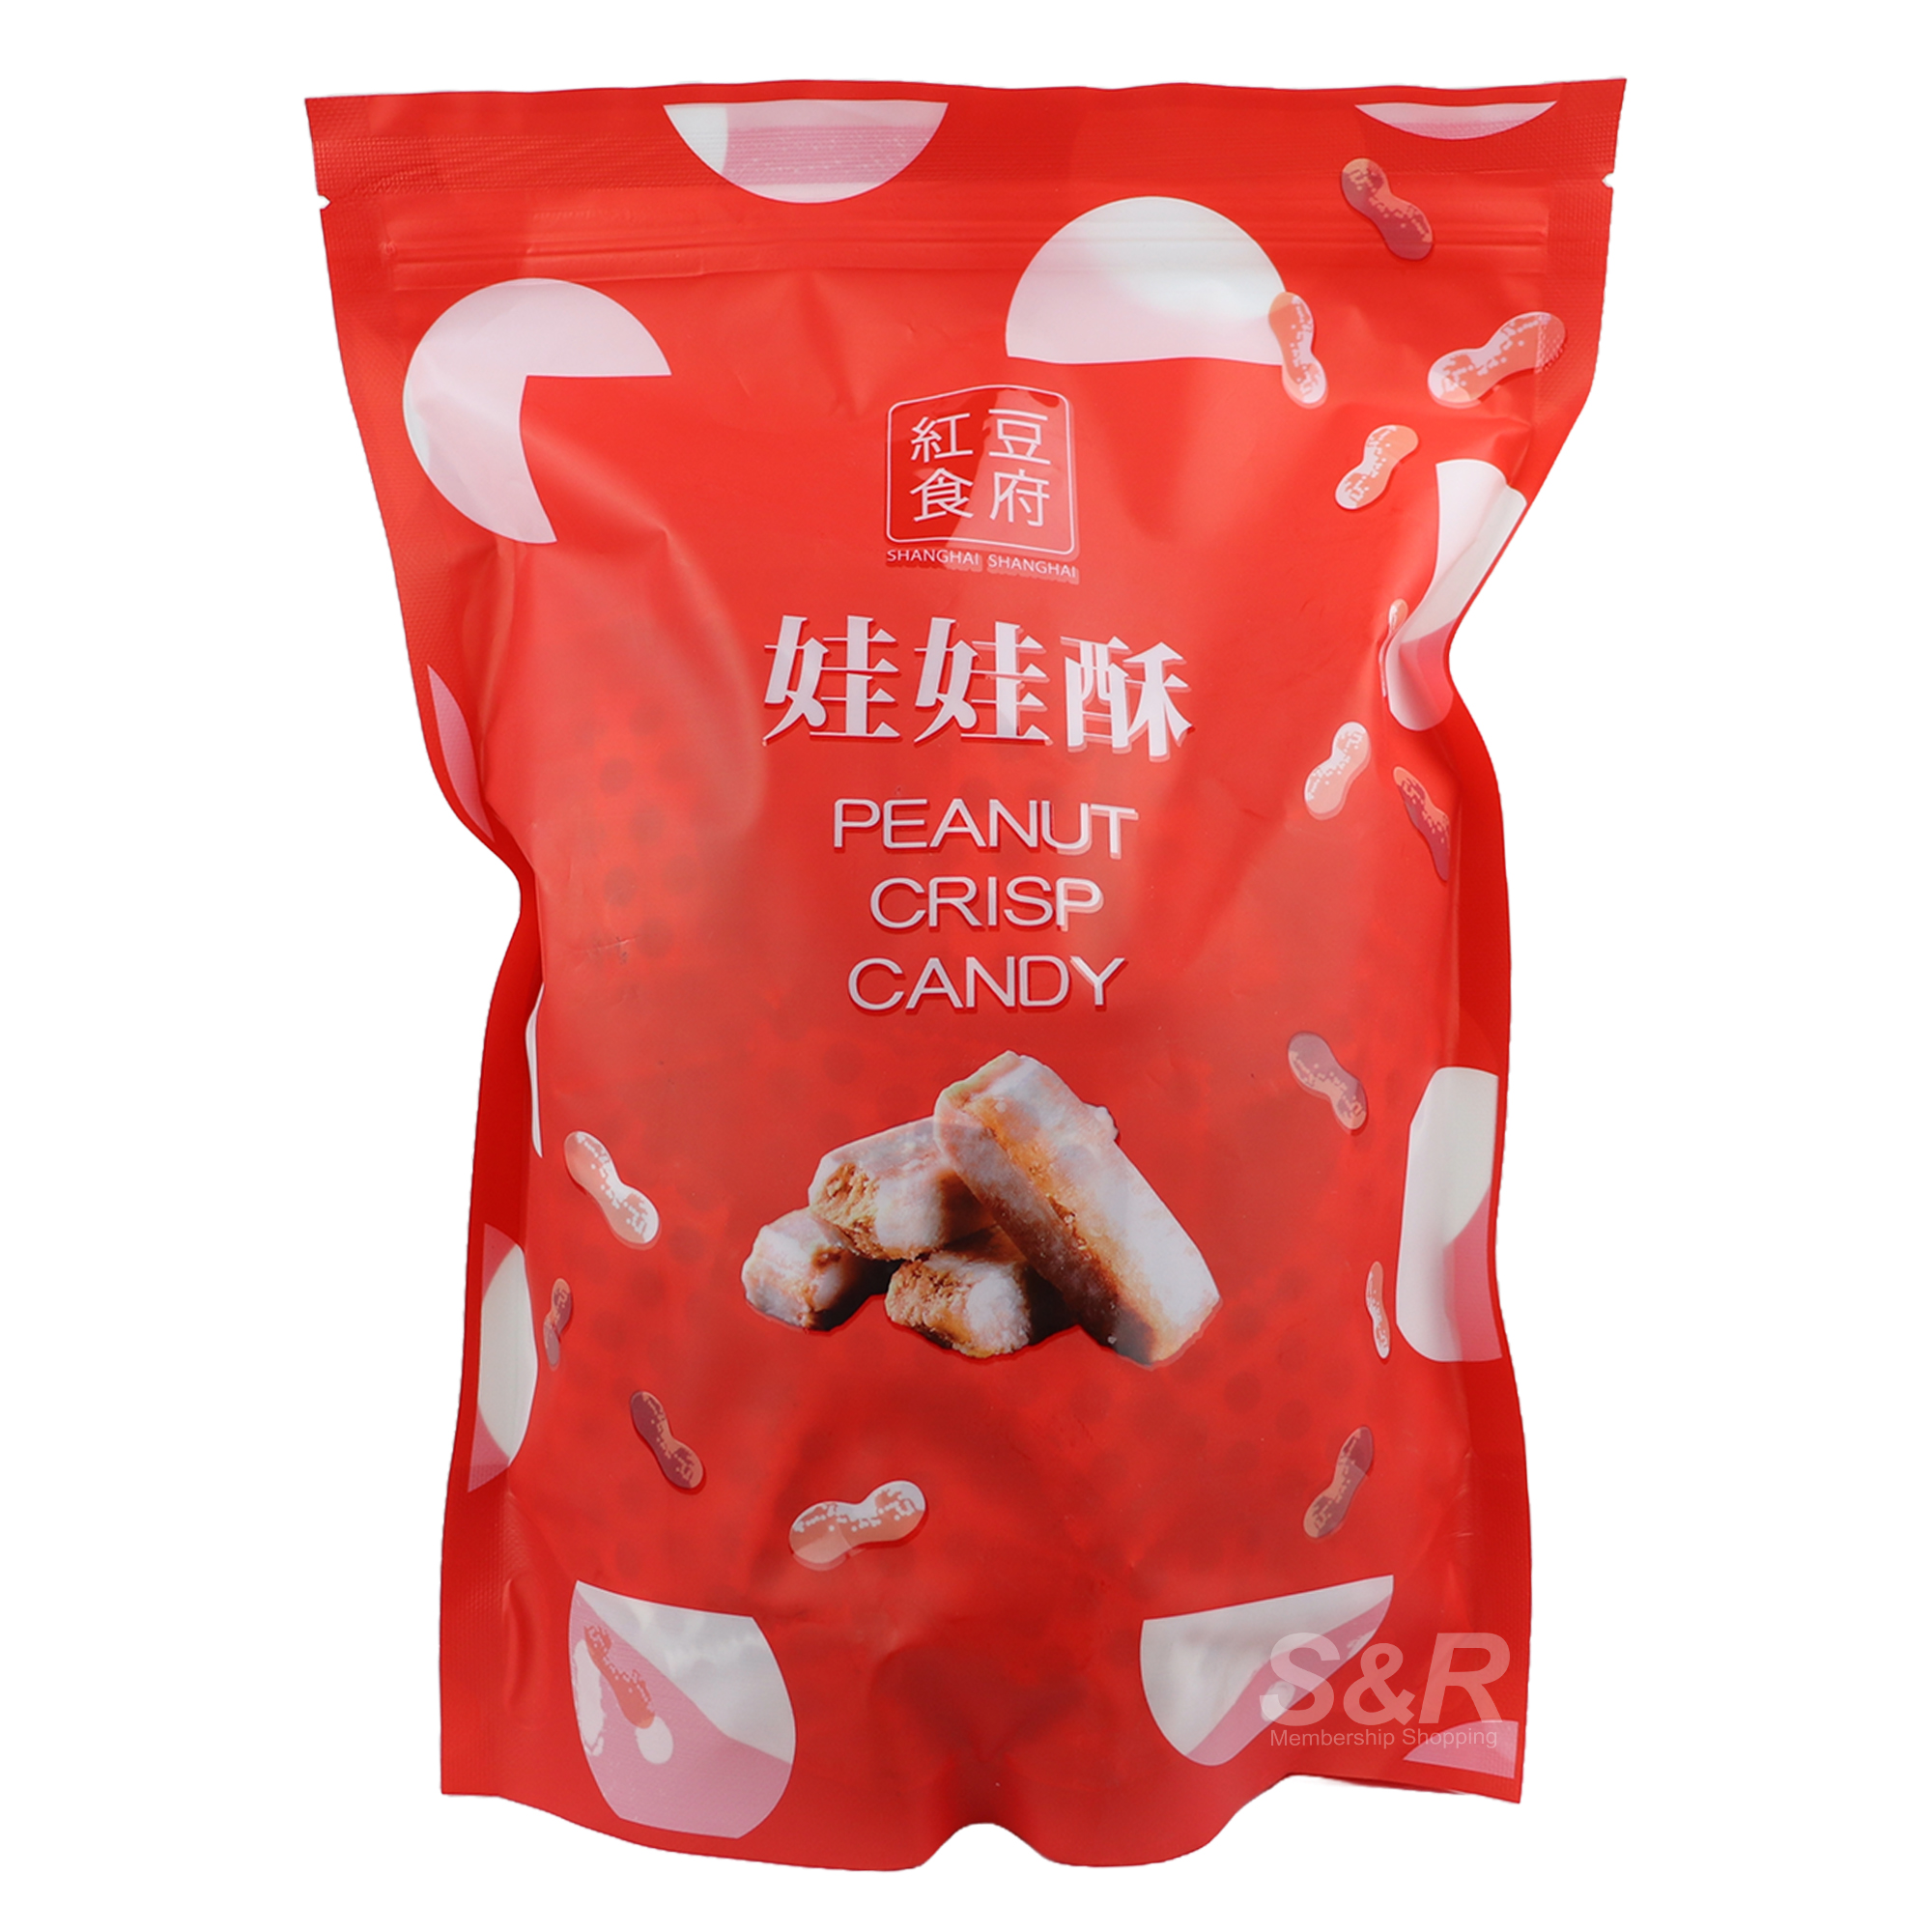 Shanghai Shanghai Peanut Crisp Candy 680g